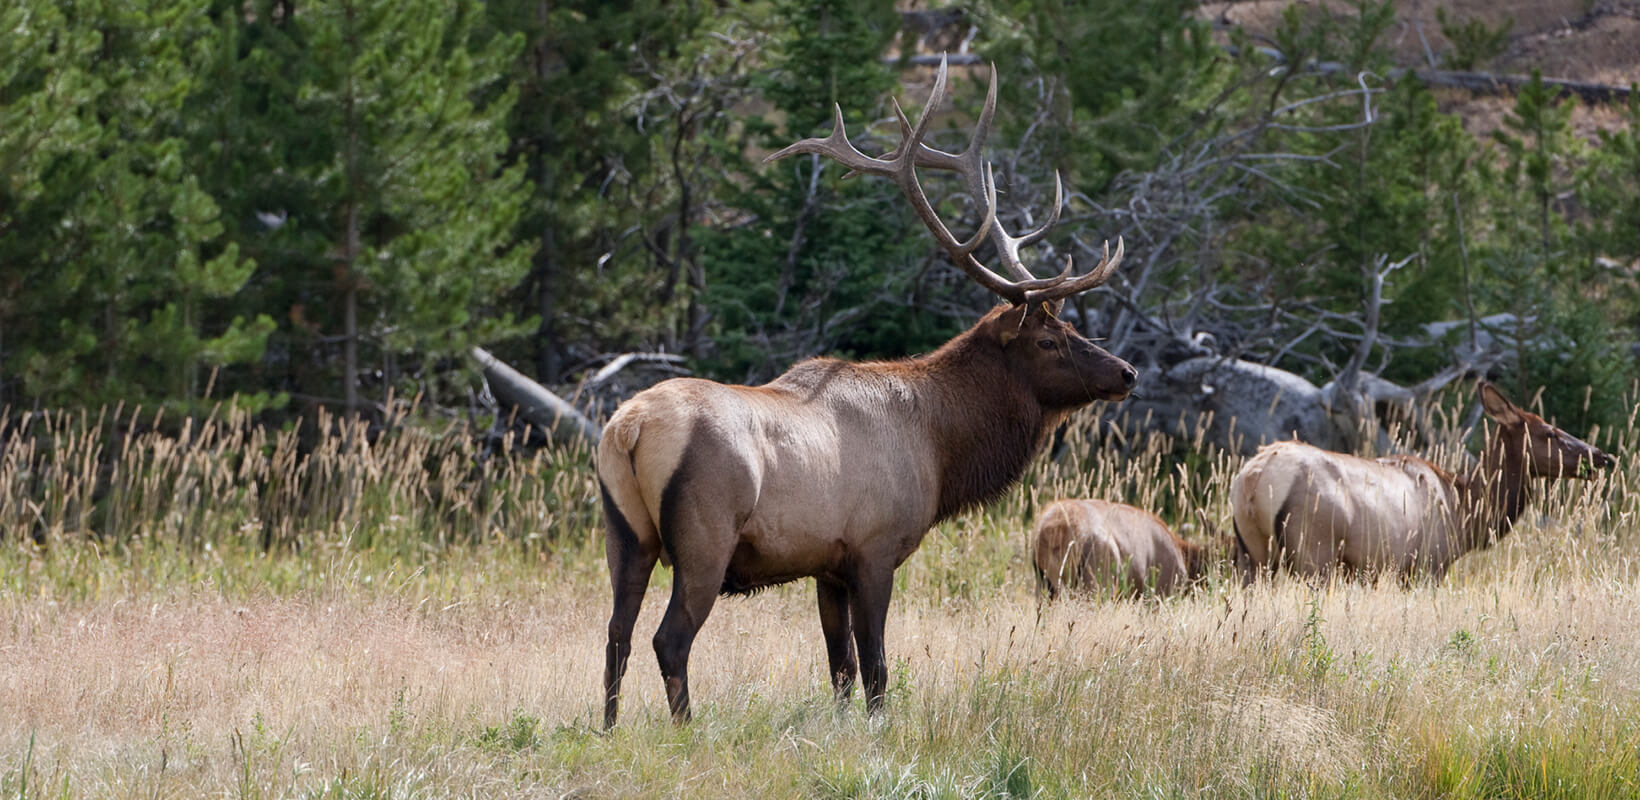 Bull elk in a field